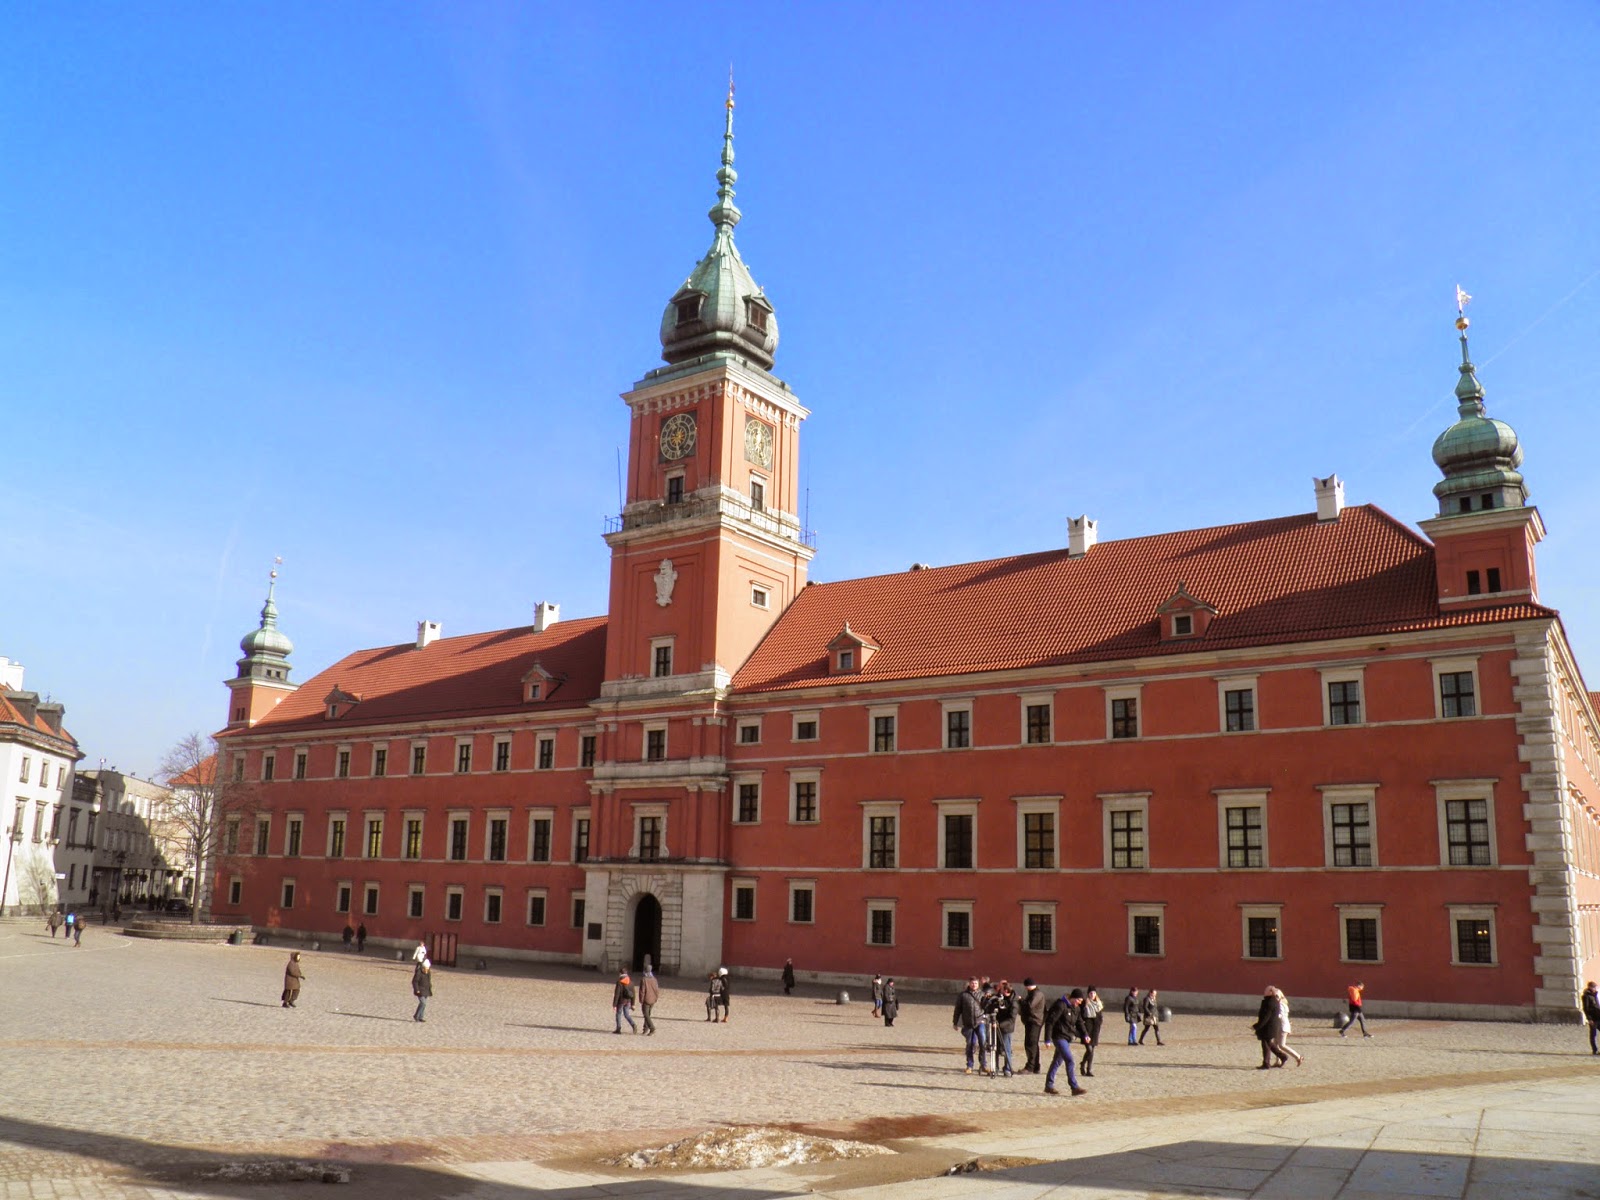 Atrakcje turystyczne Warszawy (5)